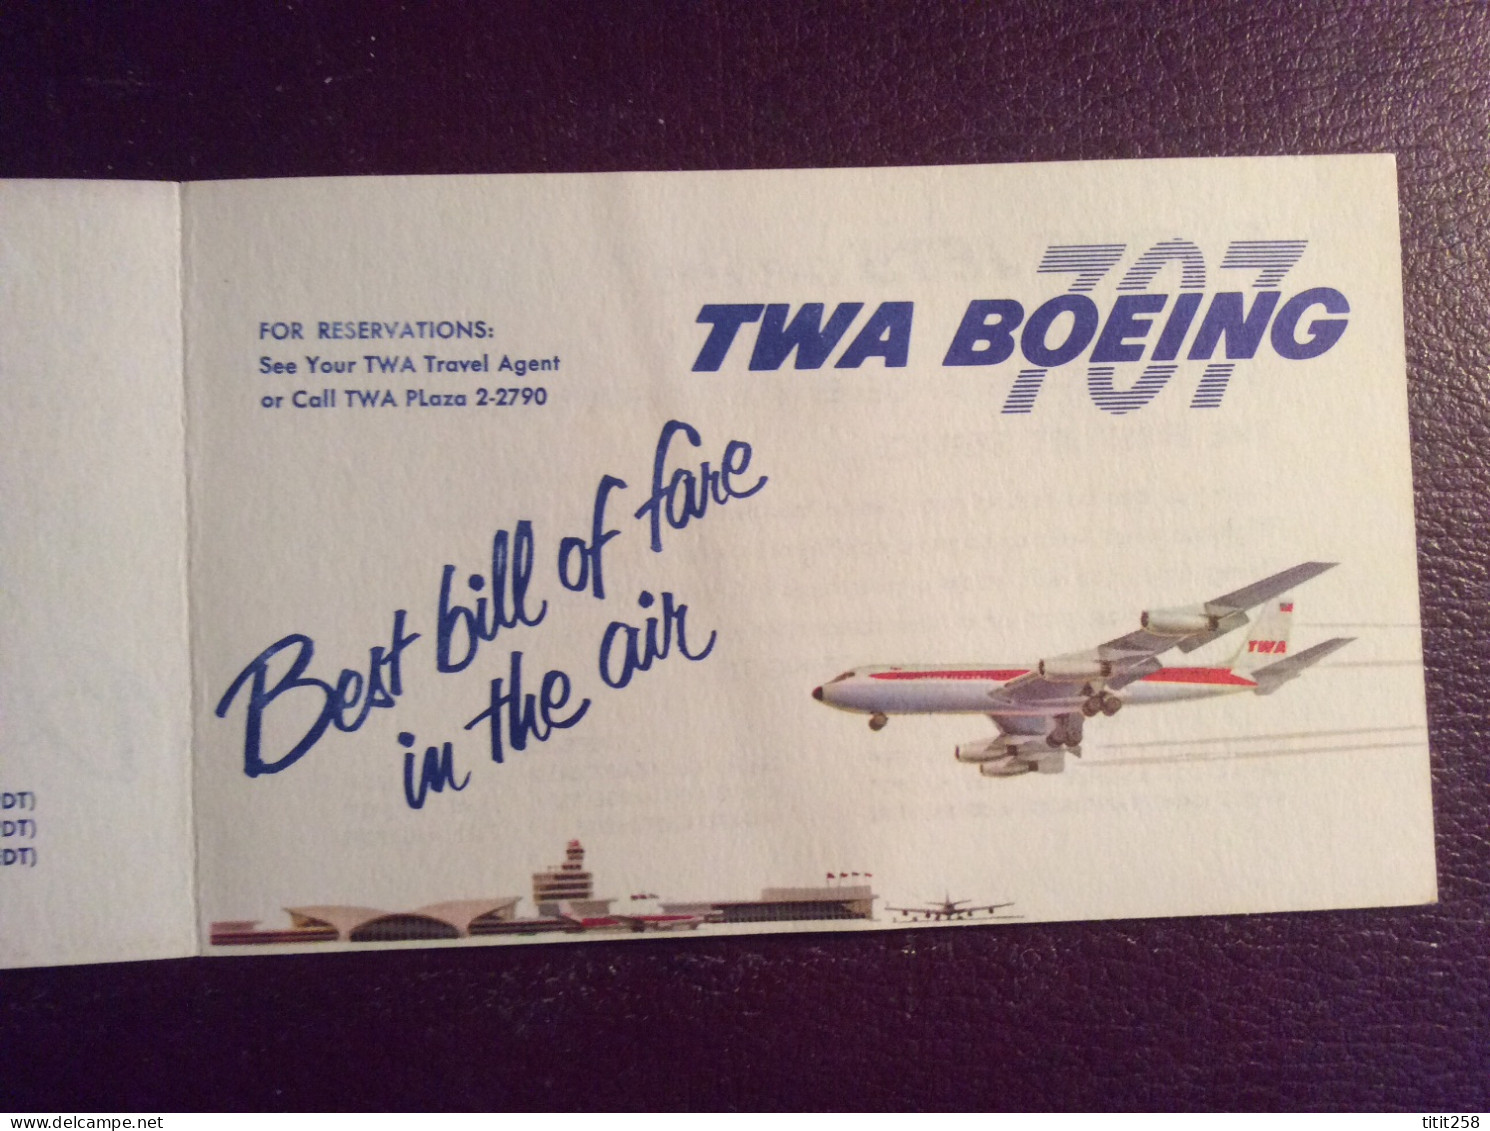 Carton Horaires CIE TWA BOEING 707 BALTIMORE LOS ANGELES SAN FRANCISCO ( Avions Aéroports ) - Horarios